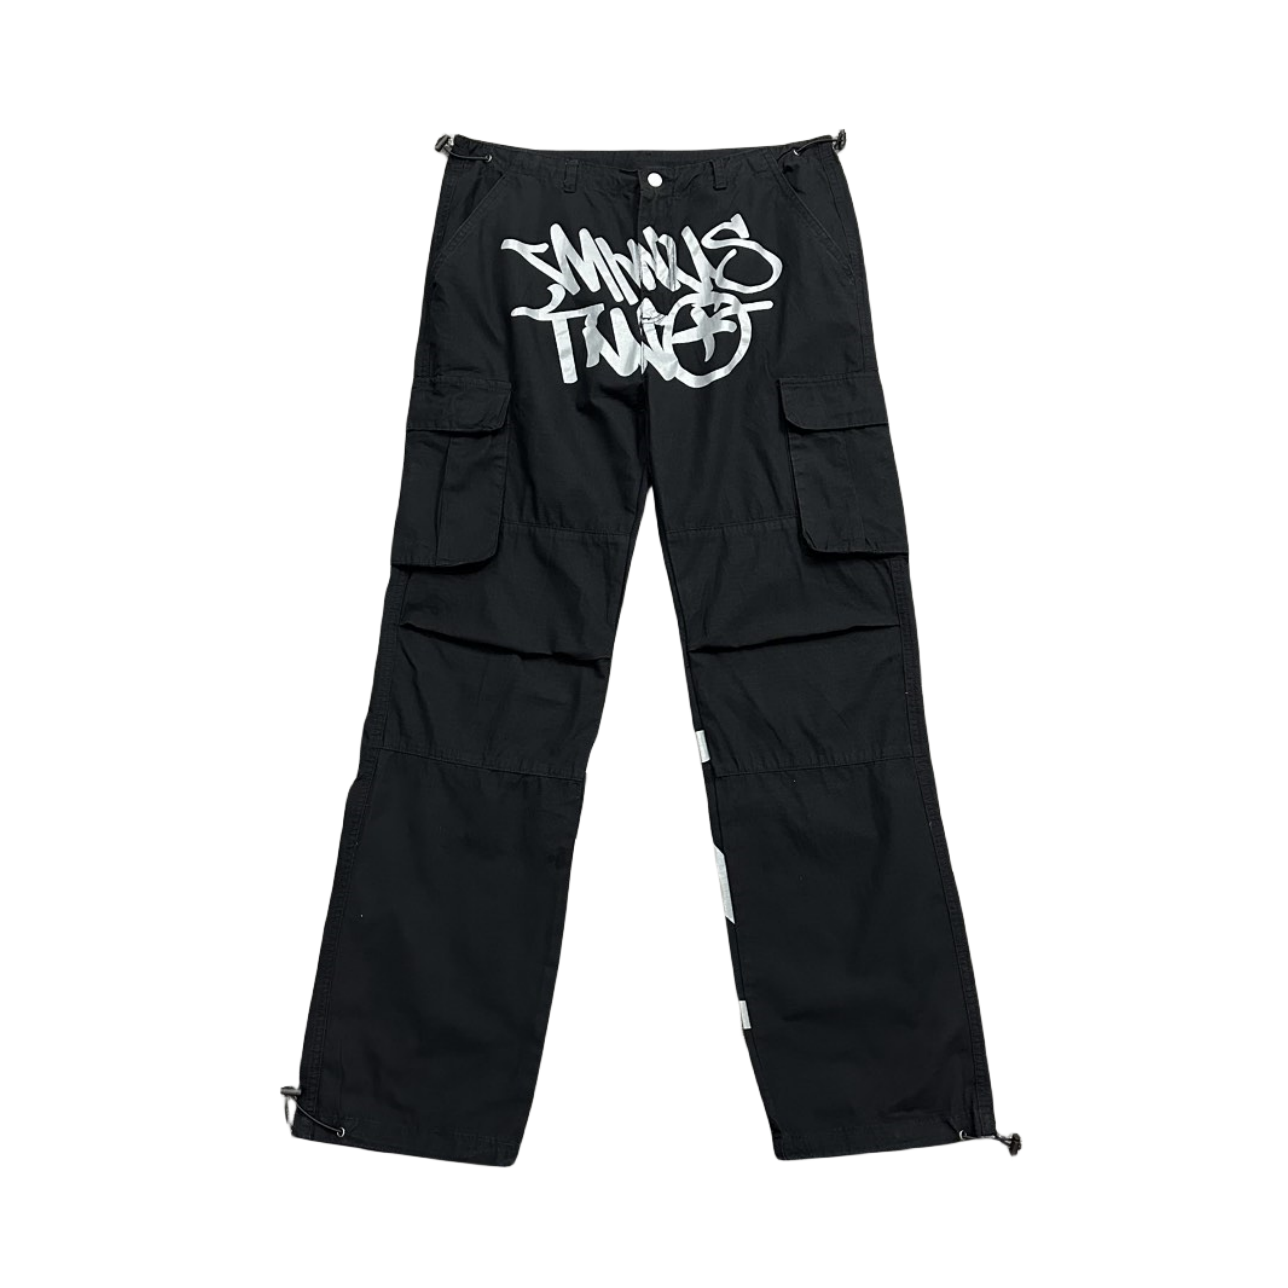 Minus Two Cargo Pants Y2K Streetwear Overalls Jeans Long Joggers Women's Men's Trousers - Black/Grey